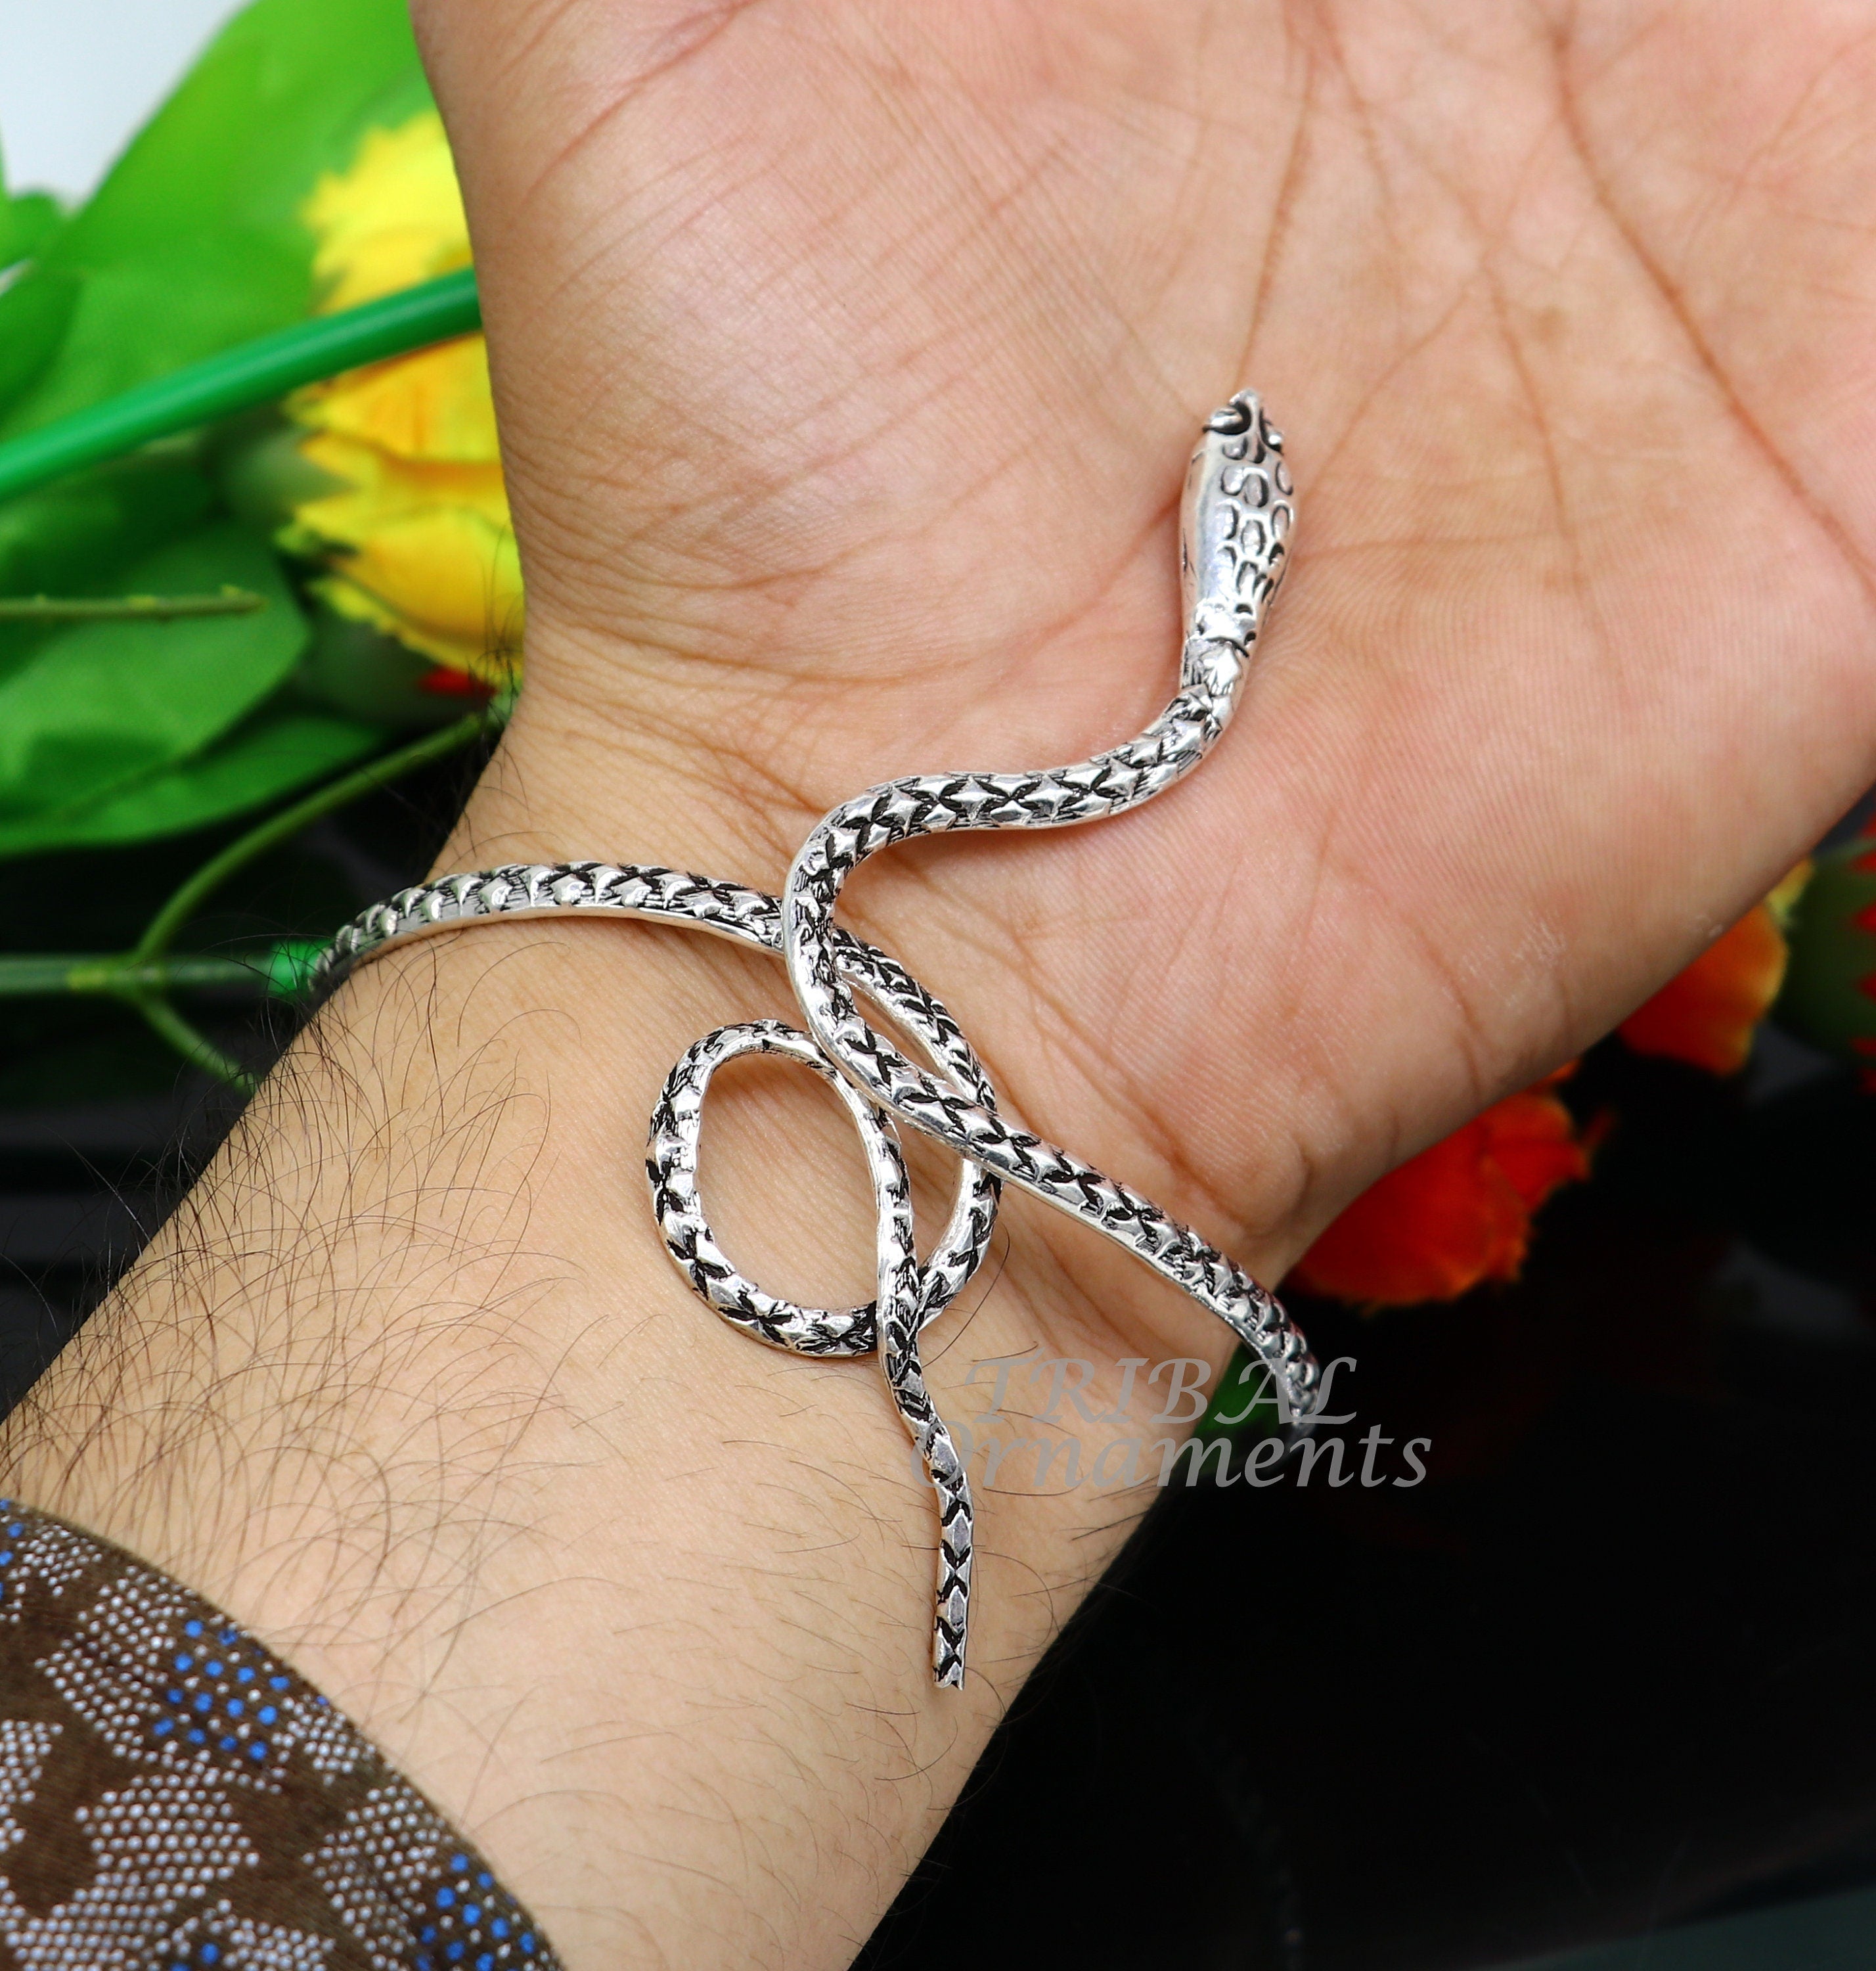 Buy Snake Bracelet, Gold Plated Bracelet, Serpent Bracelet, 14k Gold Snake,  Gift for Her Online in India - Etsy